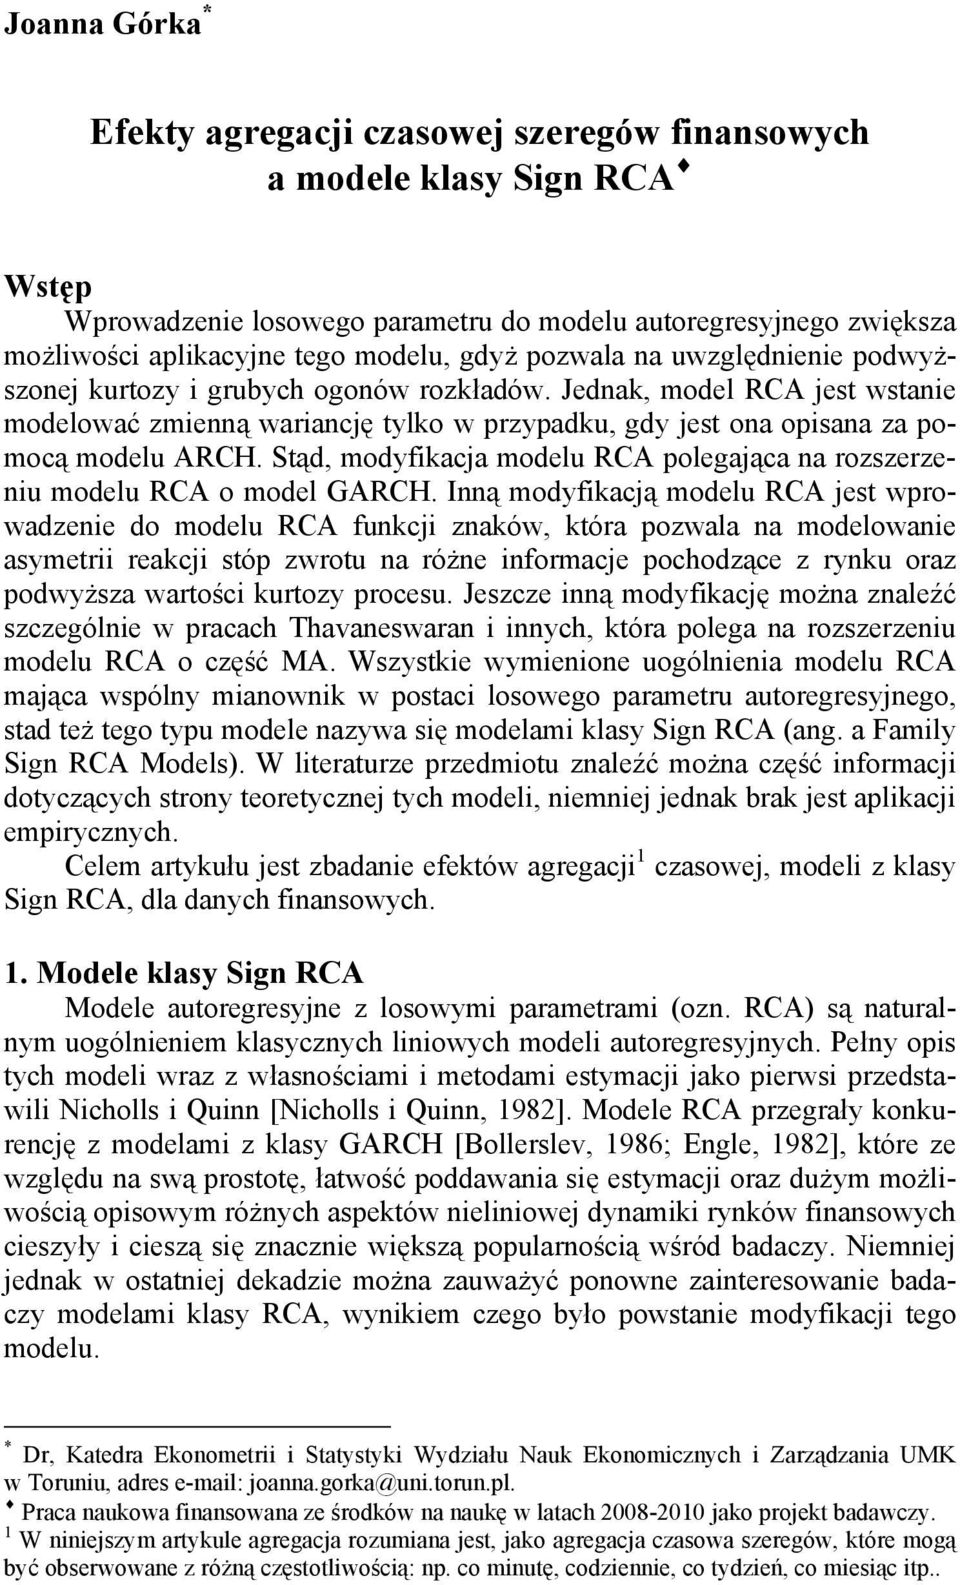 Sąd, modyfikacja modelu RCA polegająca na rozszerzeniu modelu RCA o model GARCH.